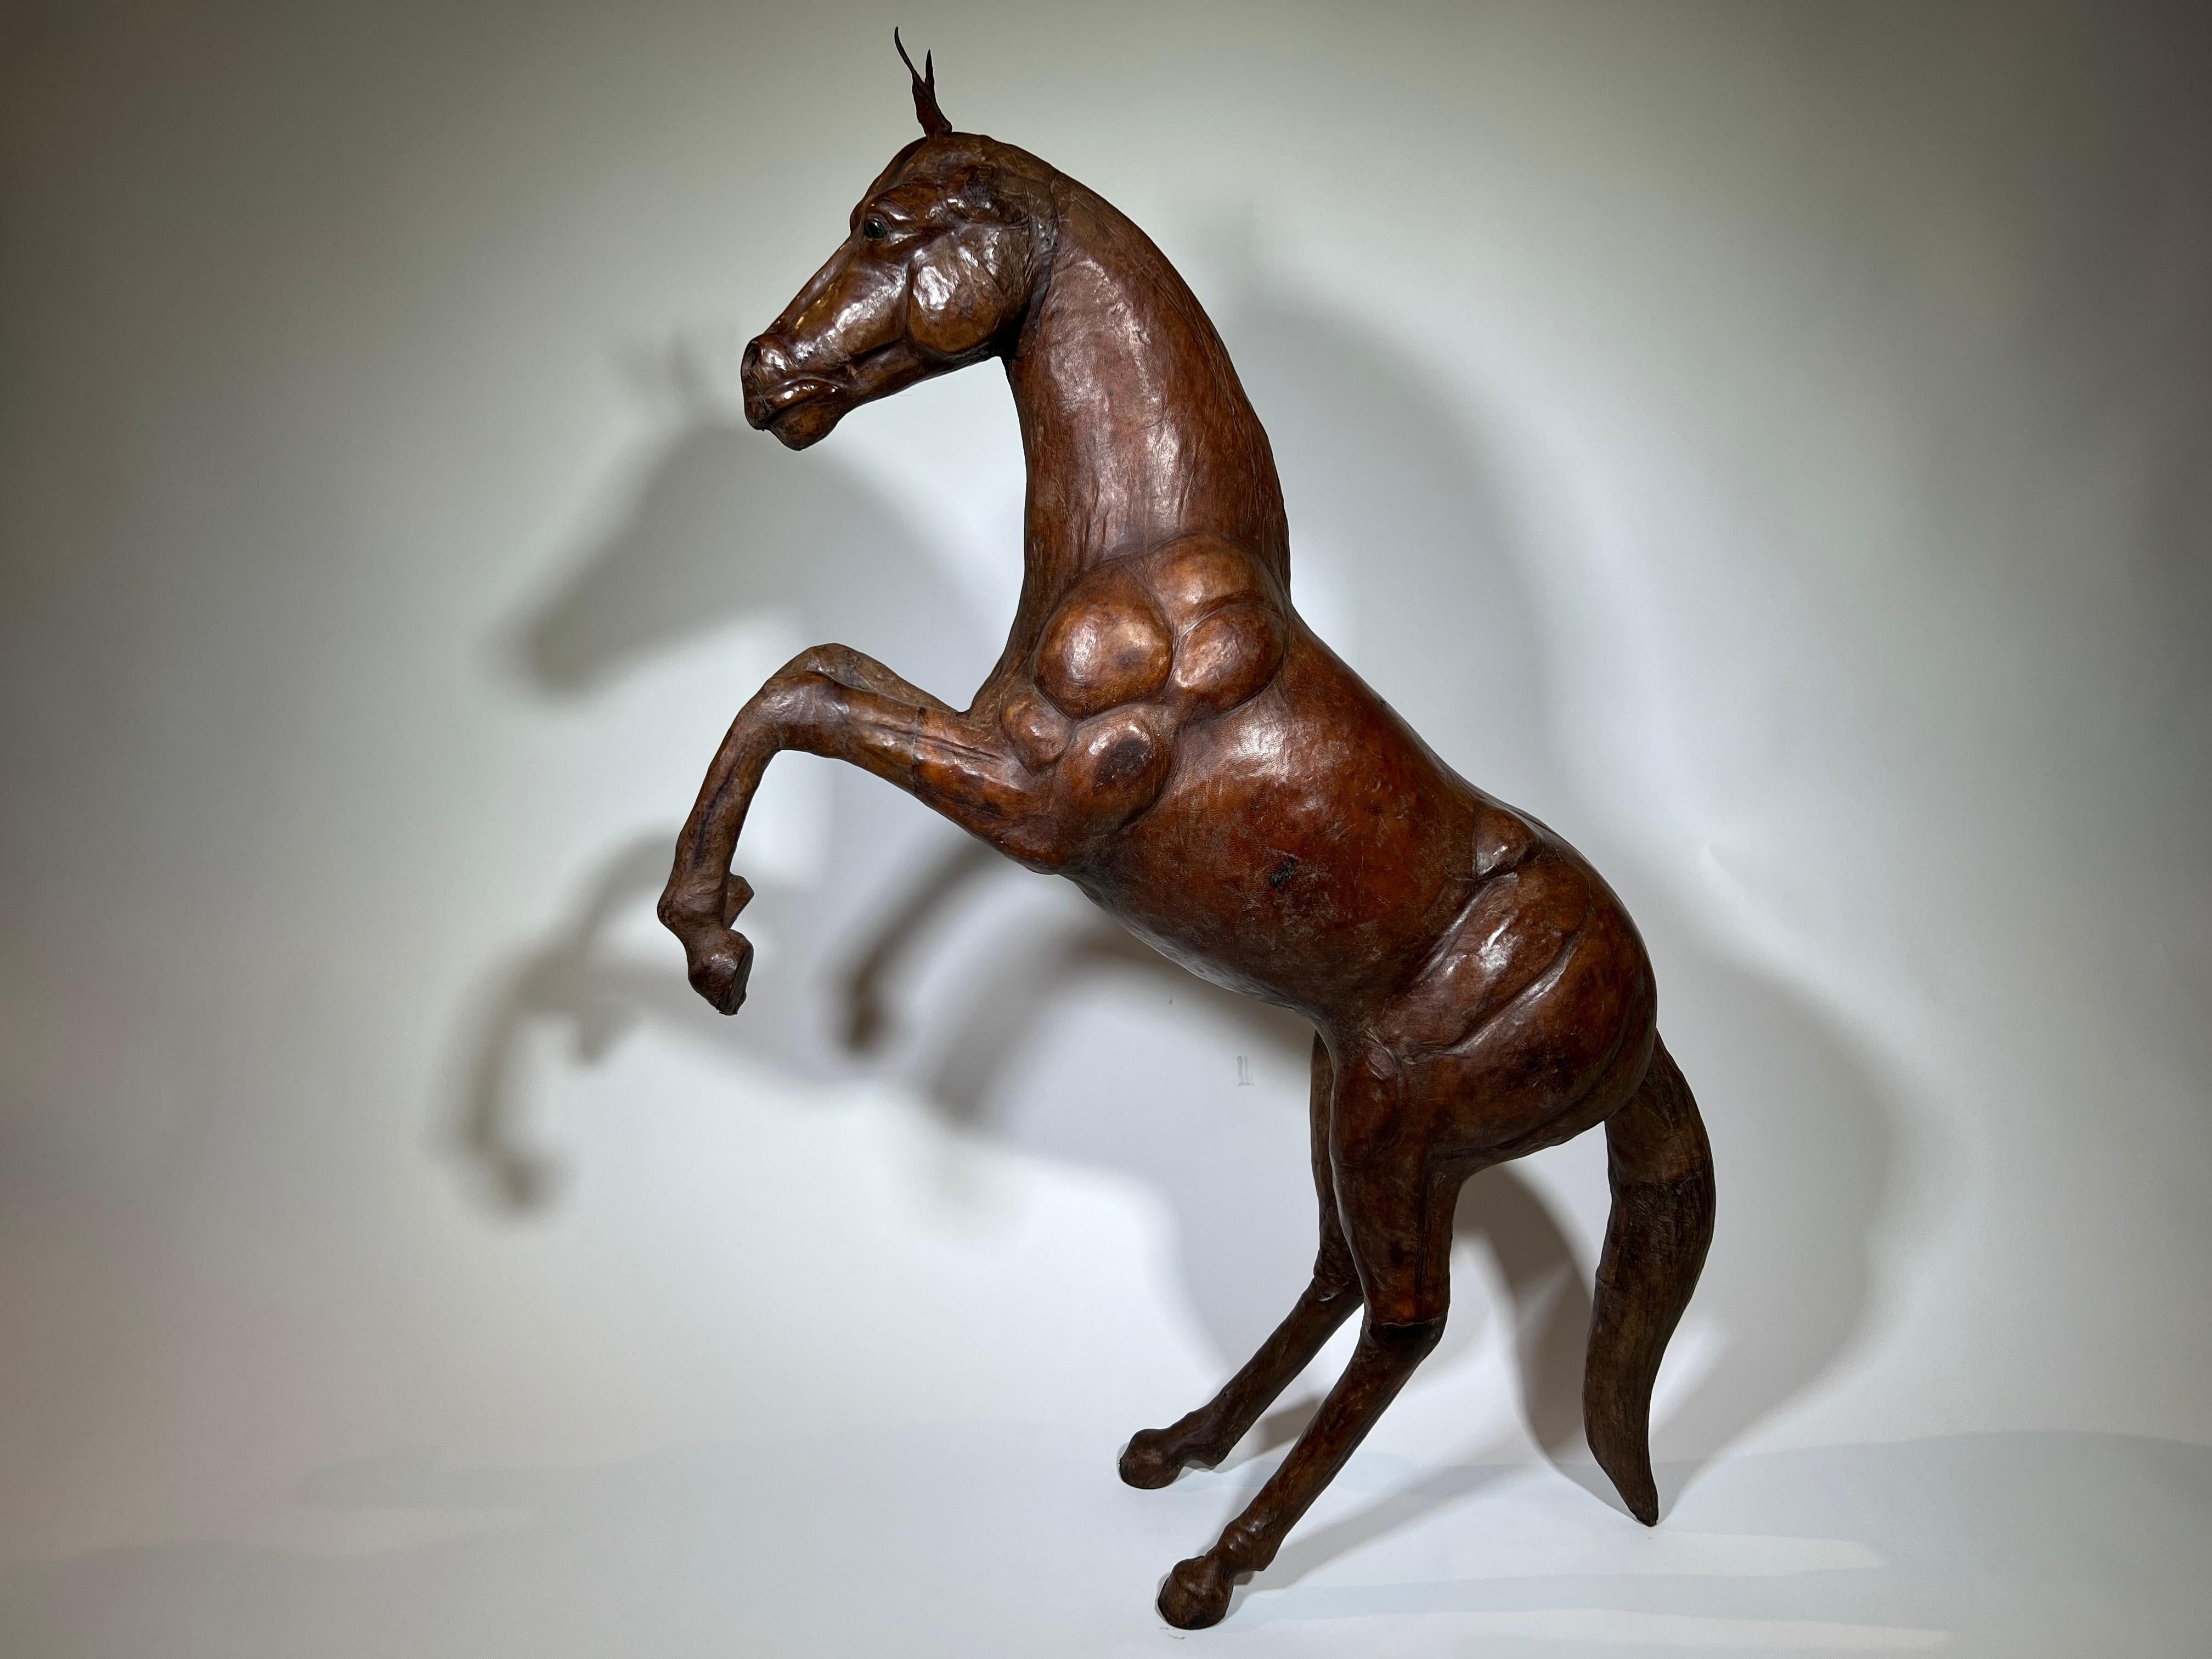 Très belle sculpture de cheval en cuir du début du 20e siècle. Il est magnifiquement placé dans une position de cabré. Merveilleuse patine. Une formidable pièce d'accentuation pour tout espace de vie.